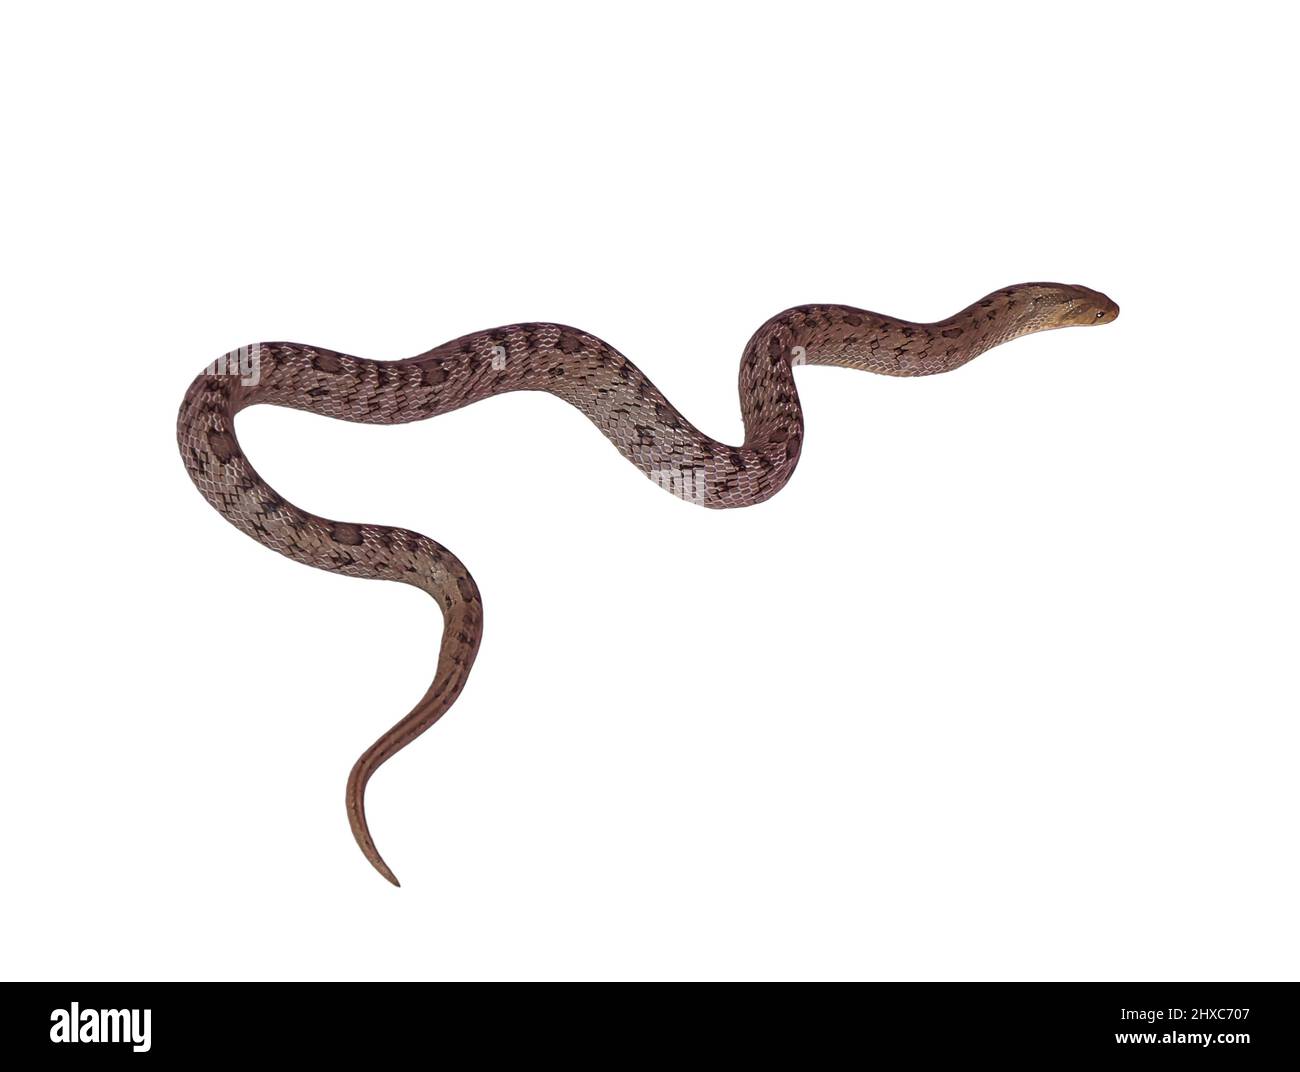 snake isolated on white background Stock Photo